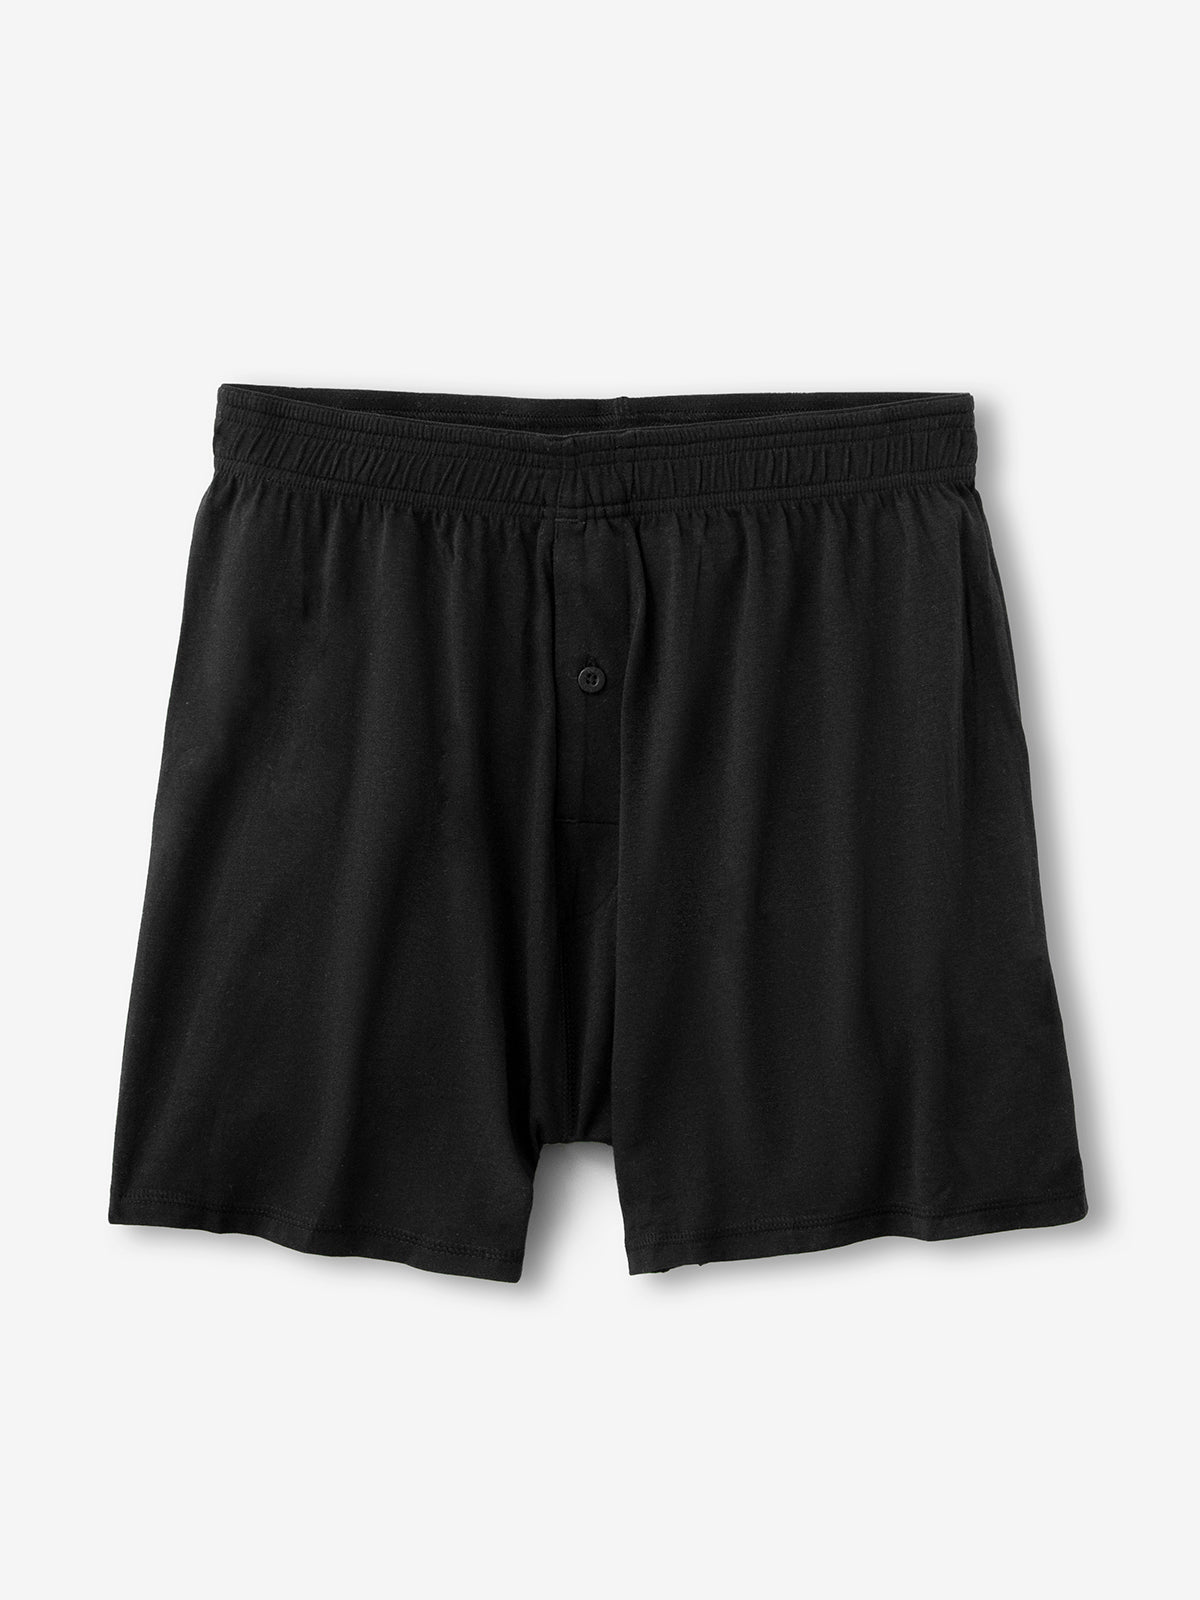 Ladies Bamboo Briefs - Black - x 3 Briefs - Underwear Ireland